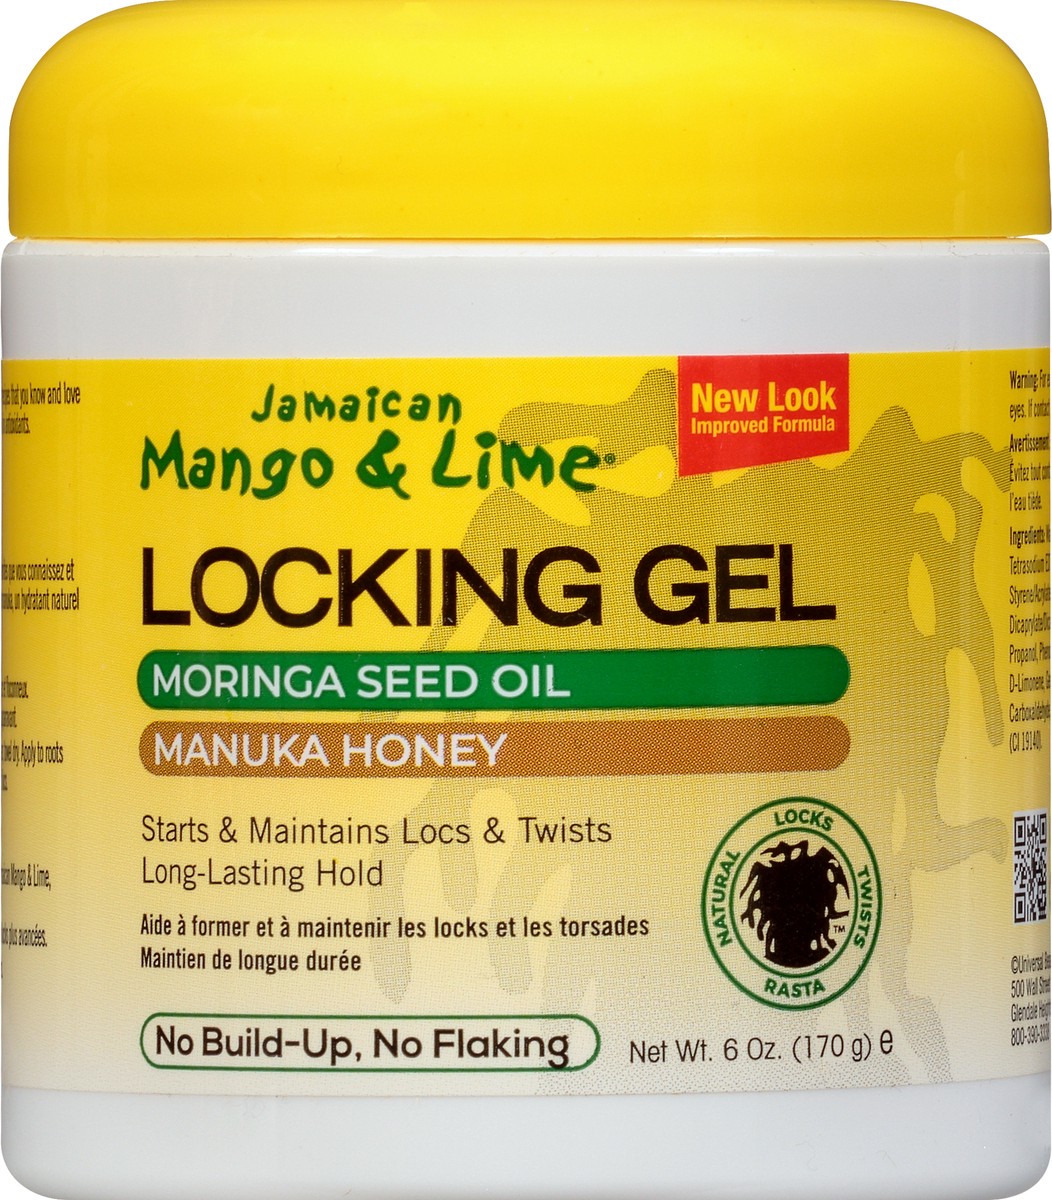 slide 6 of 9, Jamaican Mango & Lime Rasta Locks & Twist Jamaican Mango & Lime Locking Gel , 6 oz